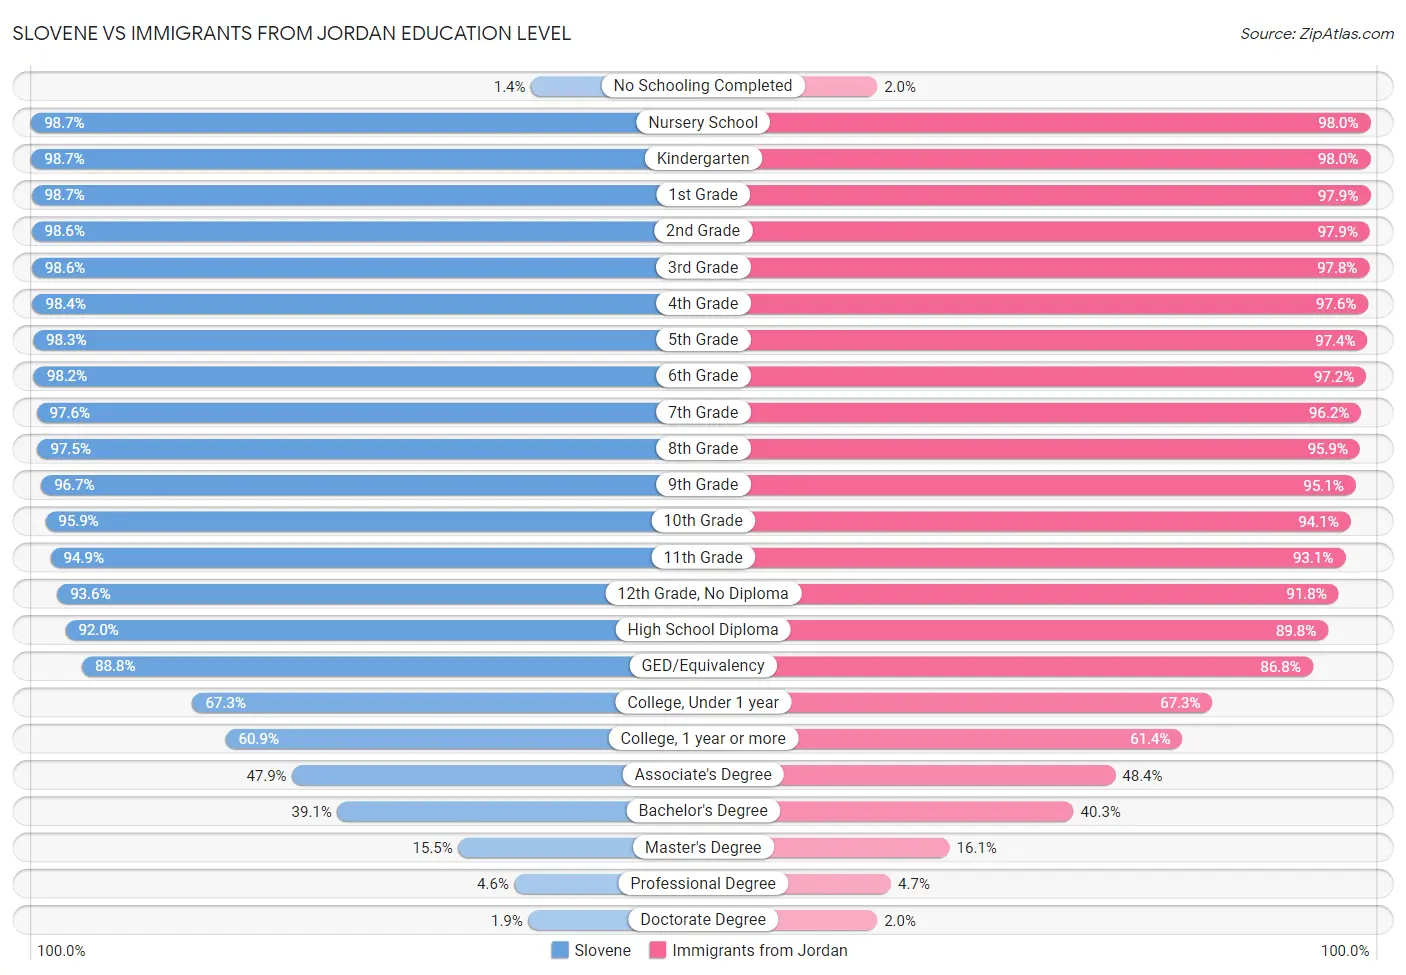 Slovene vs Immigrants from Jordan Education Level